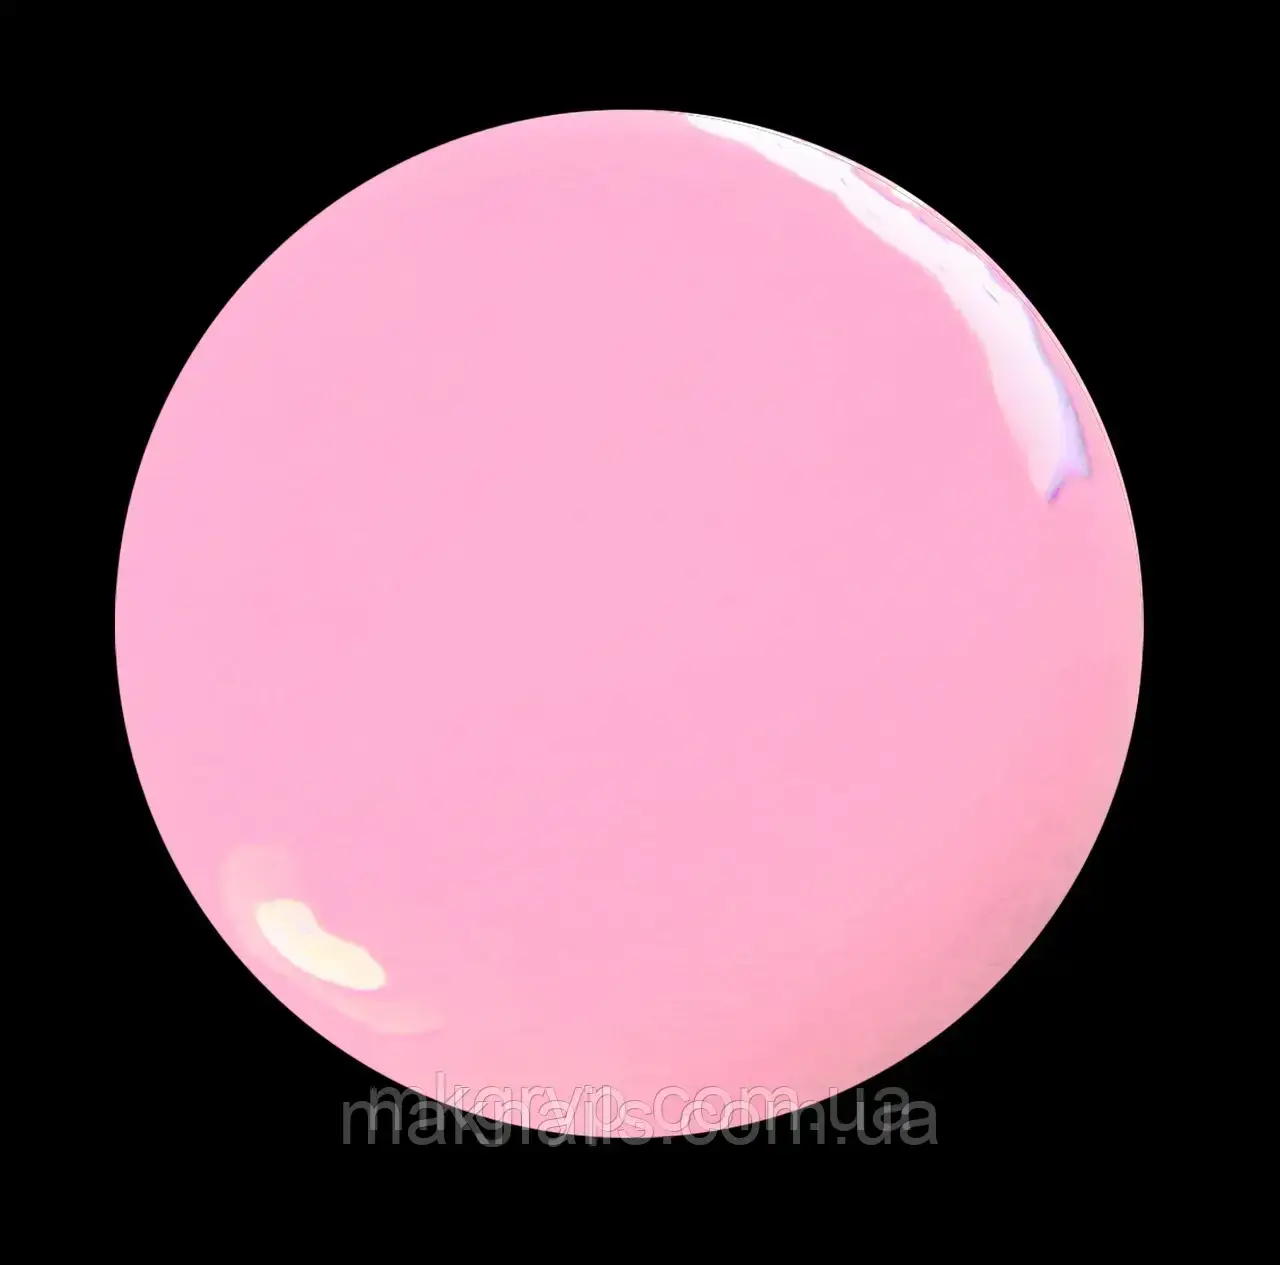 Шовлак Глобал No 8 рожевий із мікроблоском 10 мл.